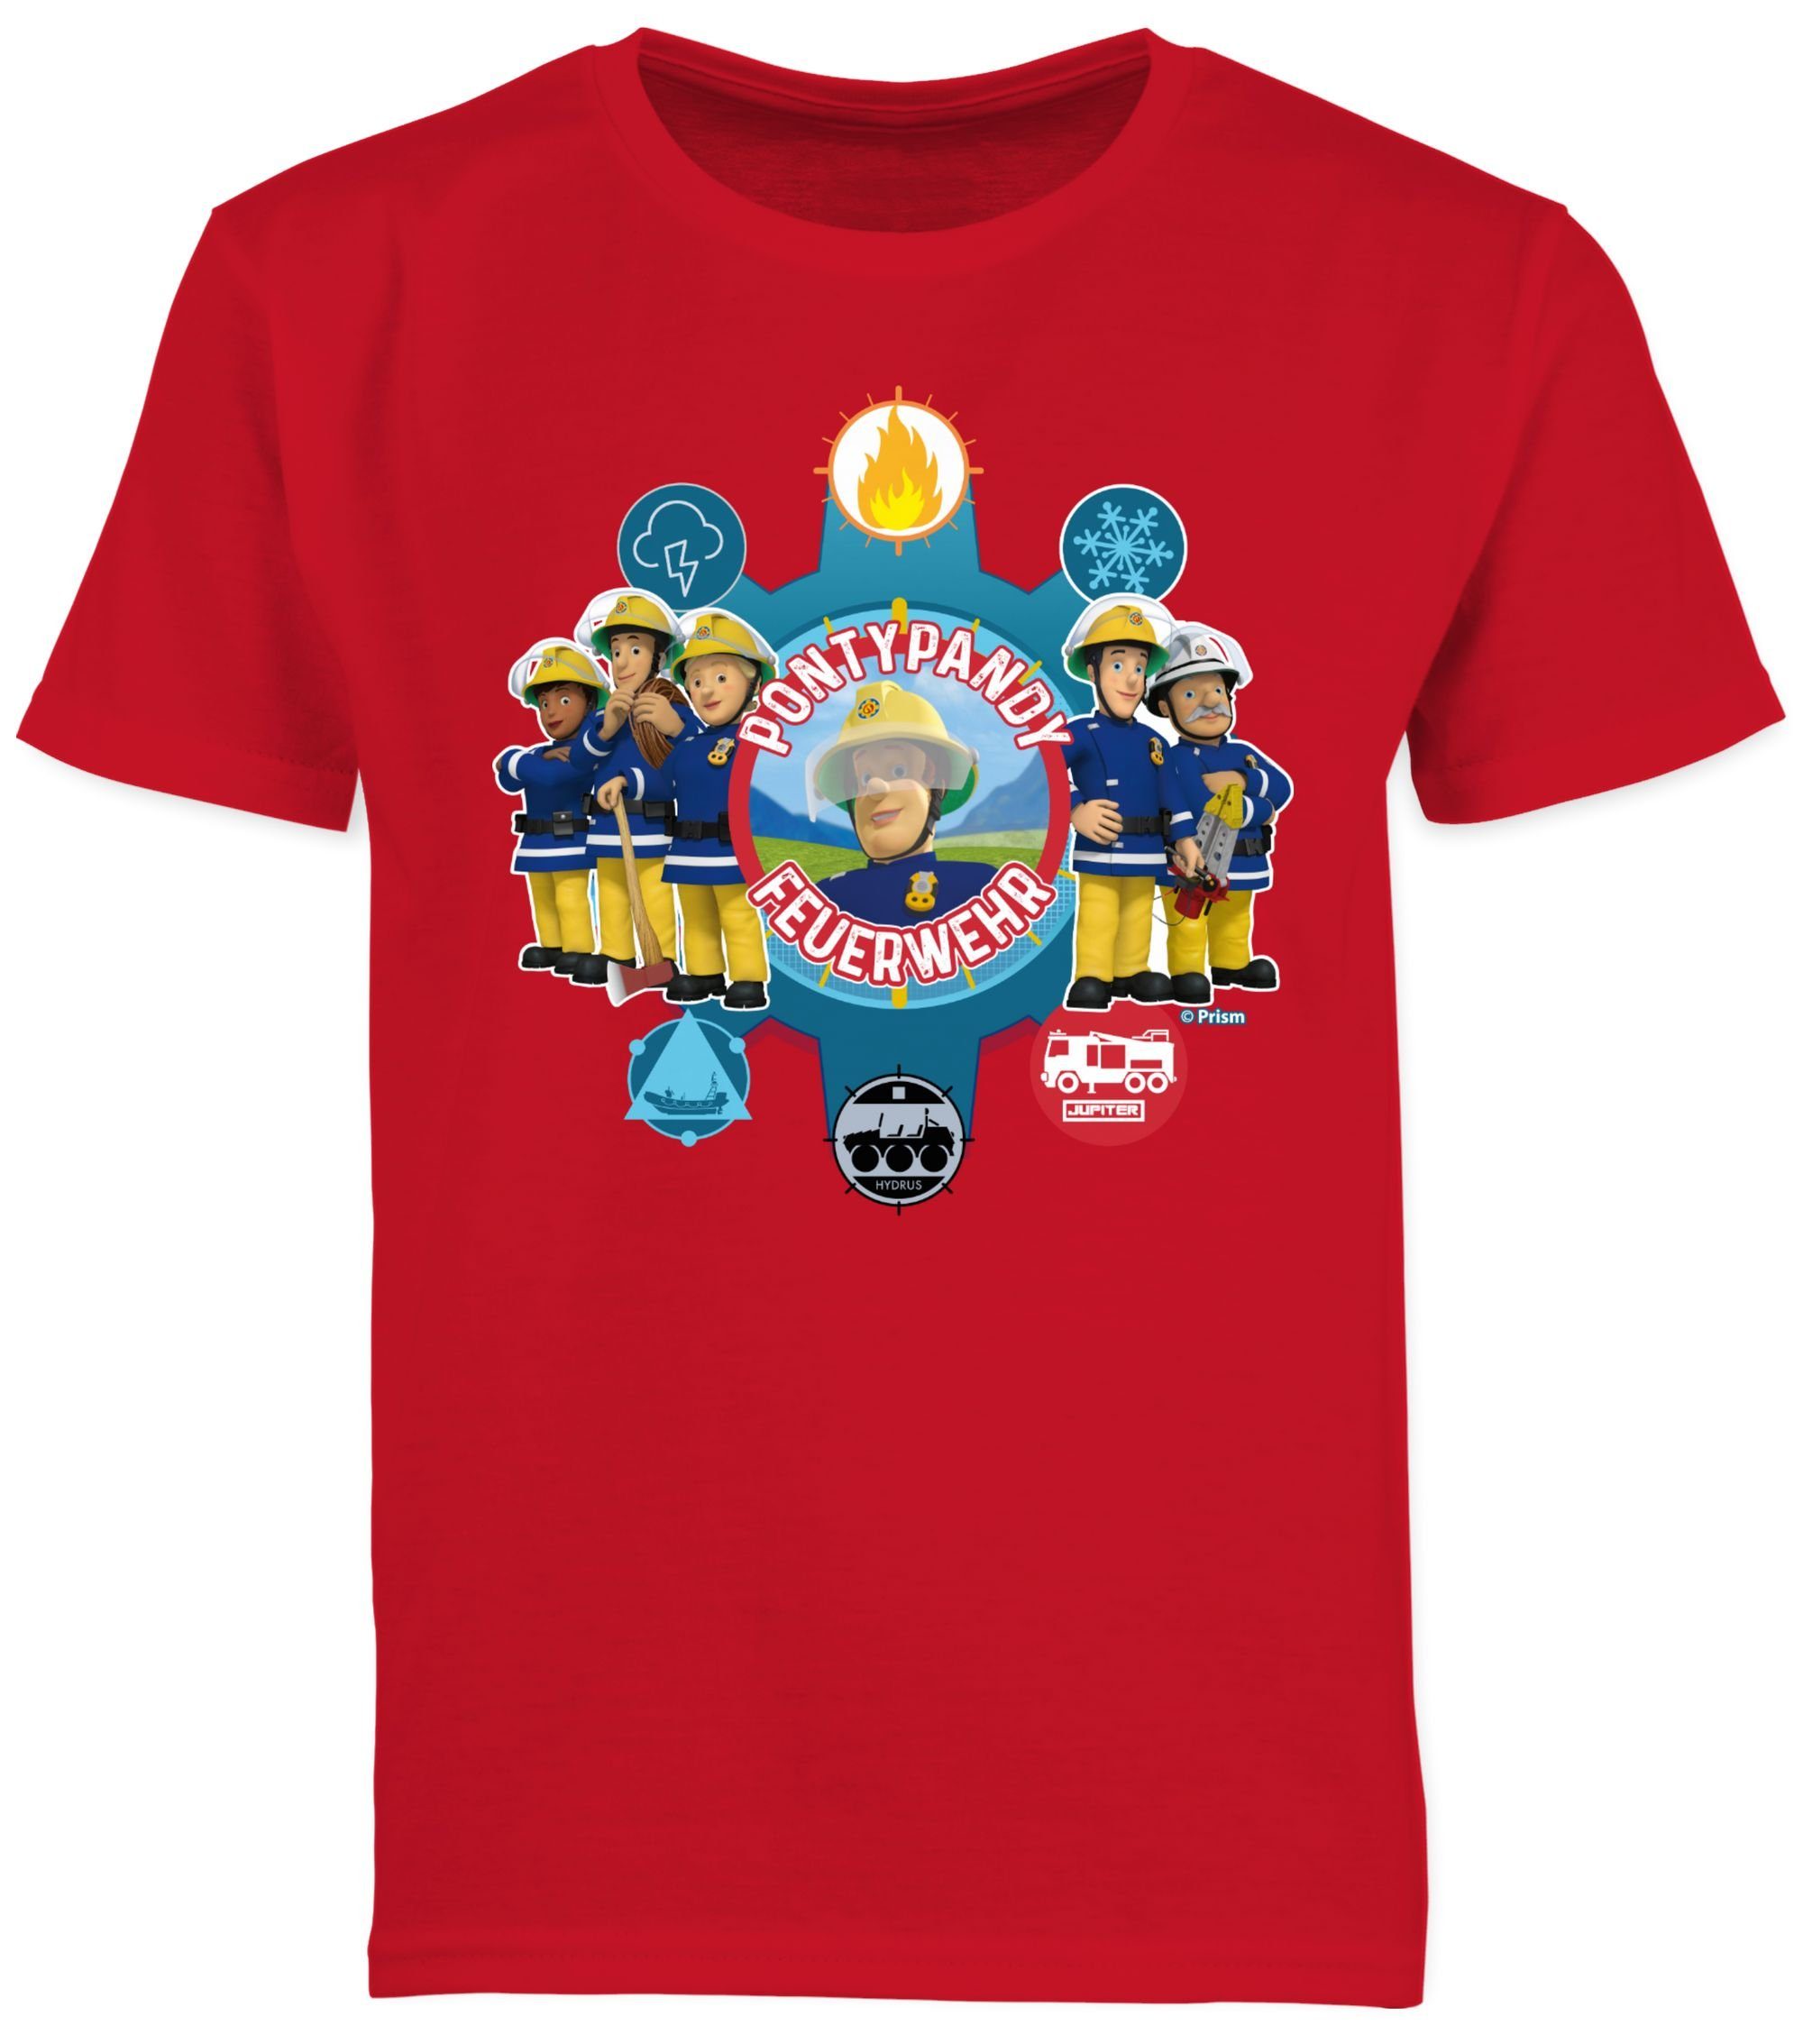 T-Shirt Pontypandy Jungen Shirtracer 03 Rot Feuerwehr Sam Feuerwehrmann